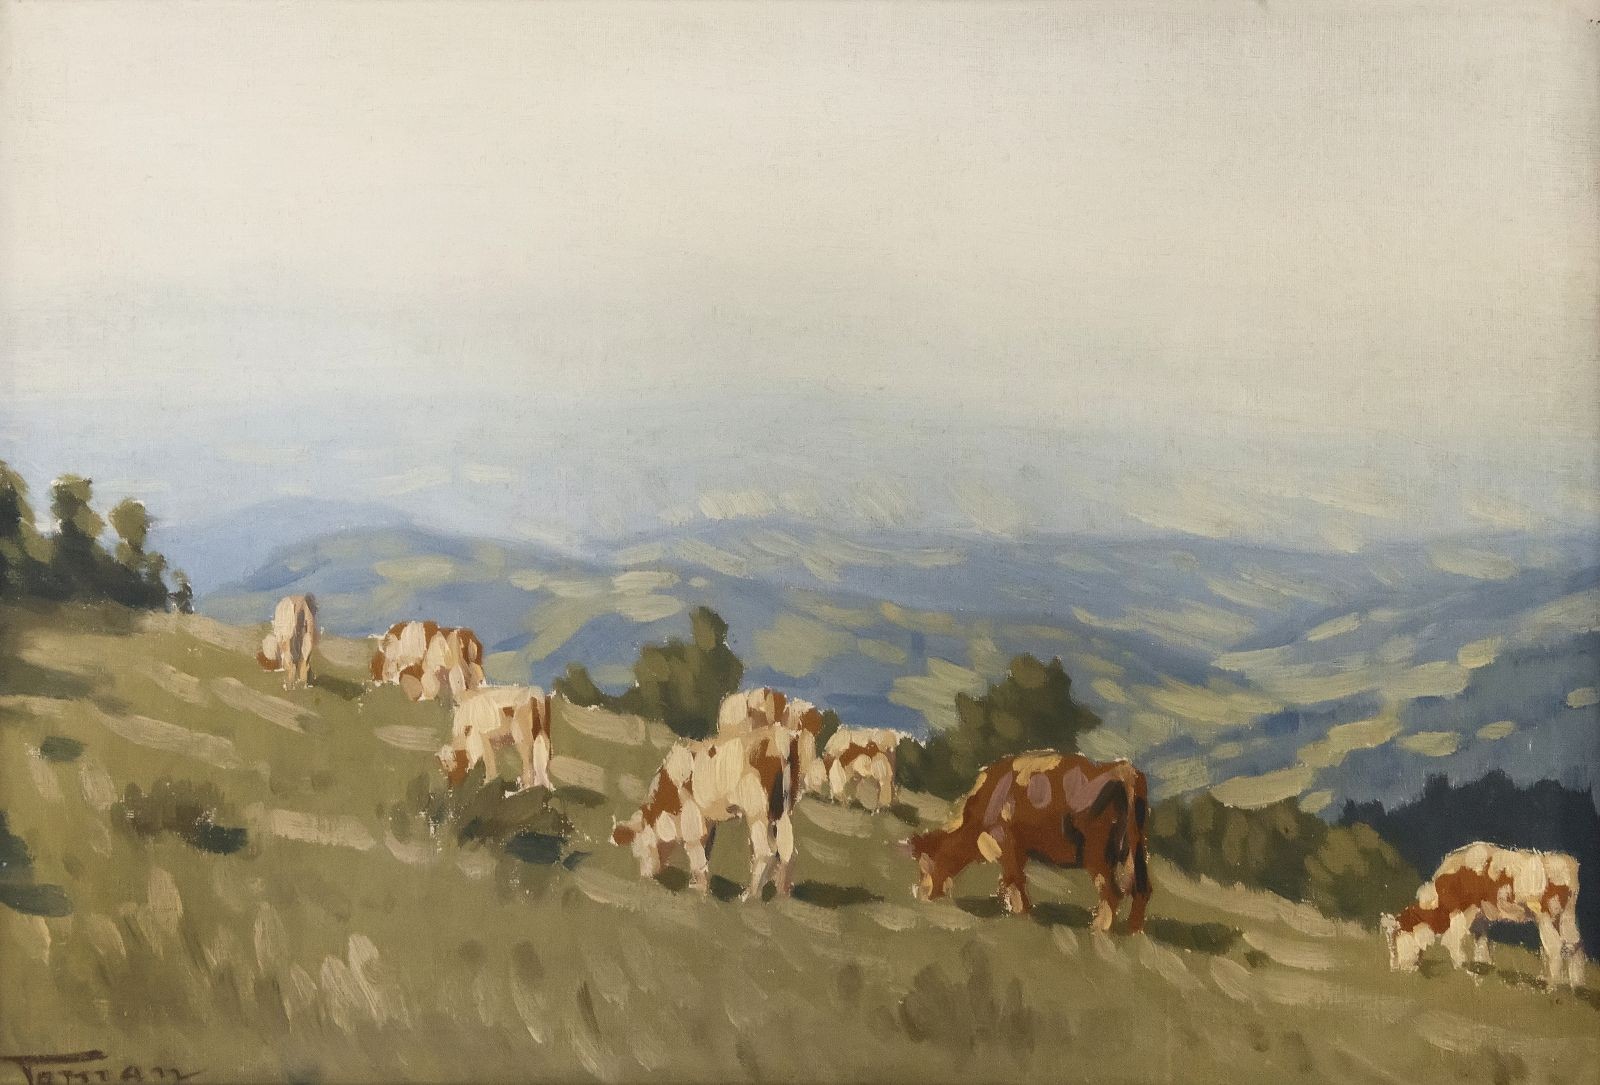 "Krávy na horské pastvině s výhledem do krajiny"